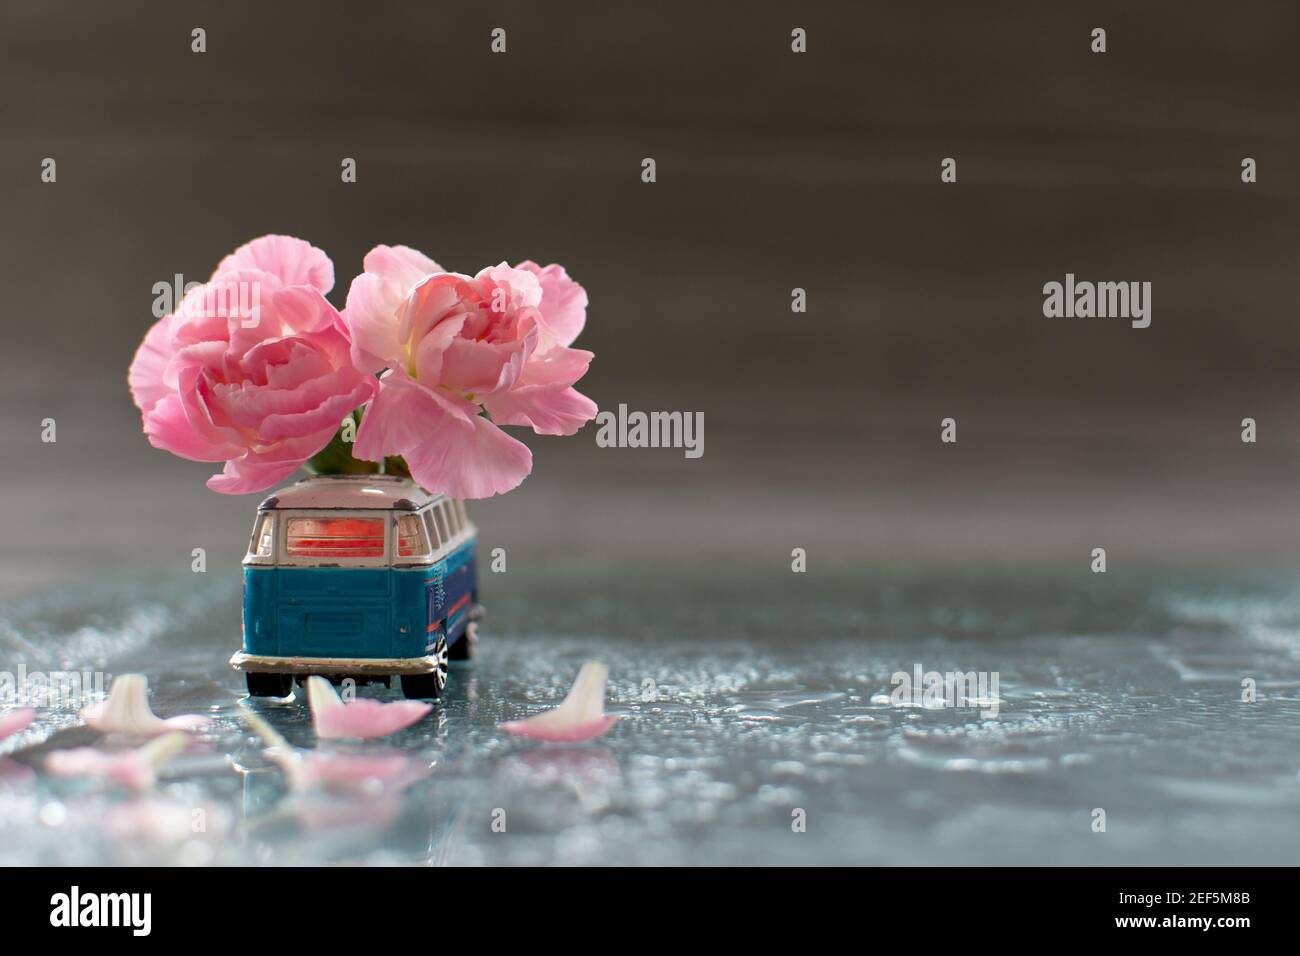 Vecchia macchina giocattolo decorata con fiori di garofano rosa Foto Stock